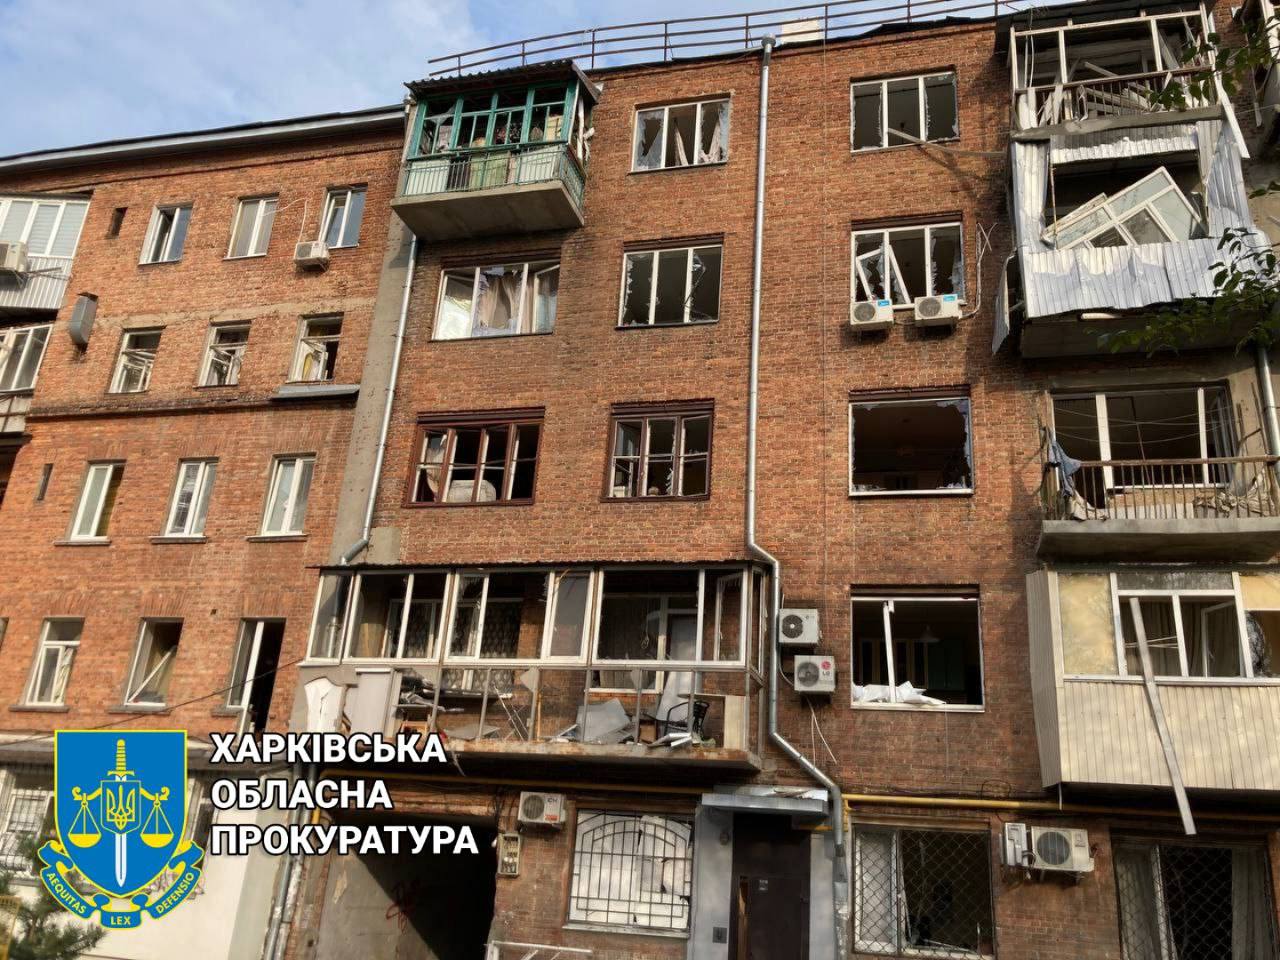 Дом в центре Харькова после обстрела 11 августа